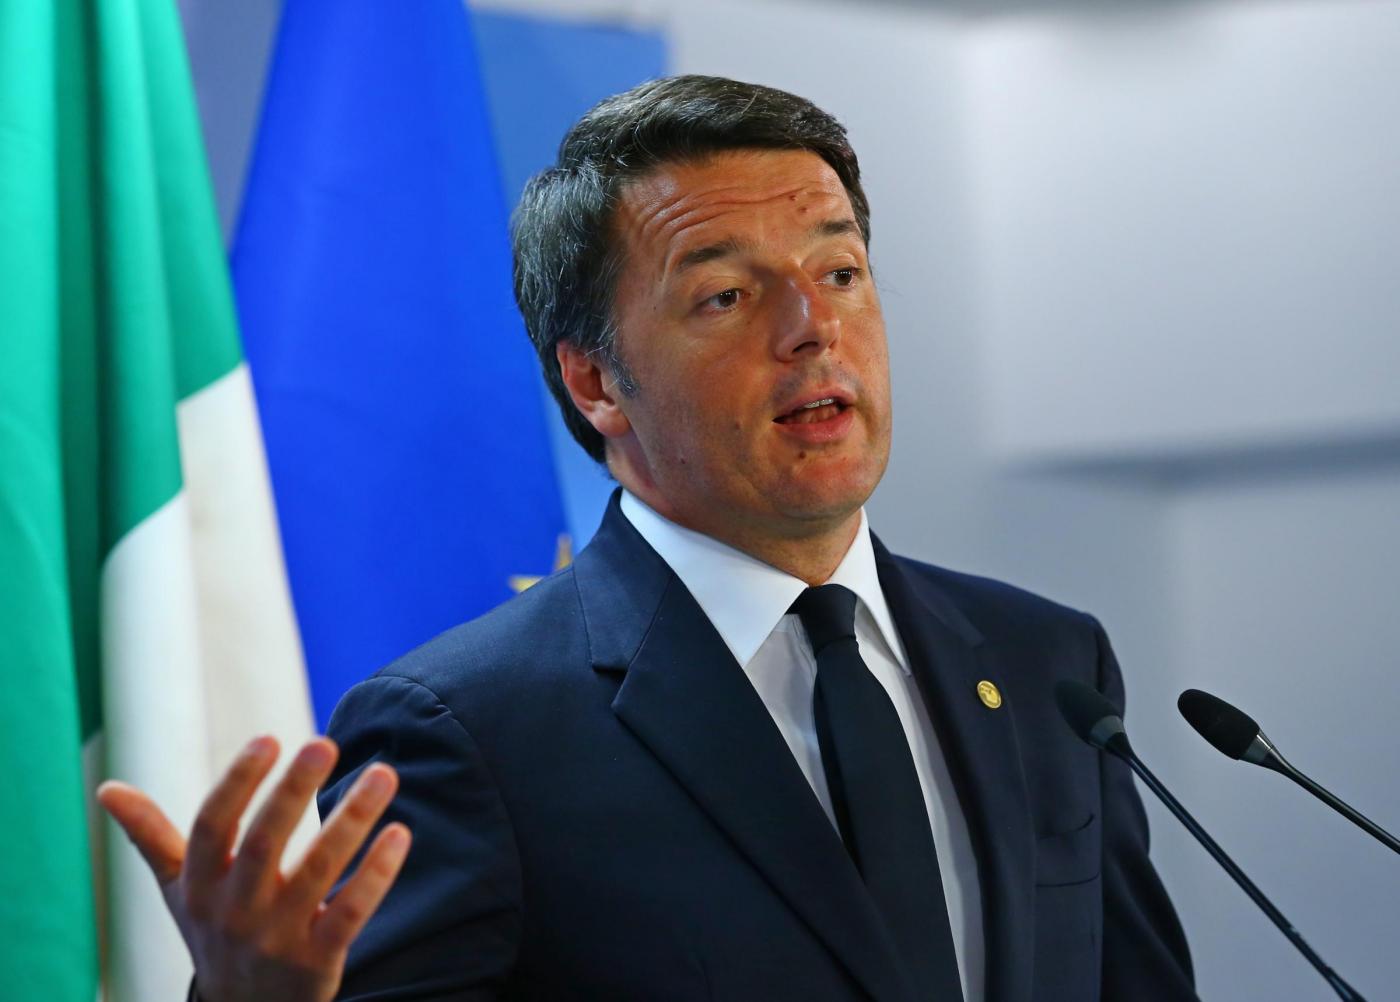 Conferenza di Renzi su risultati del referendum costituzionale